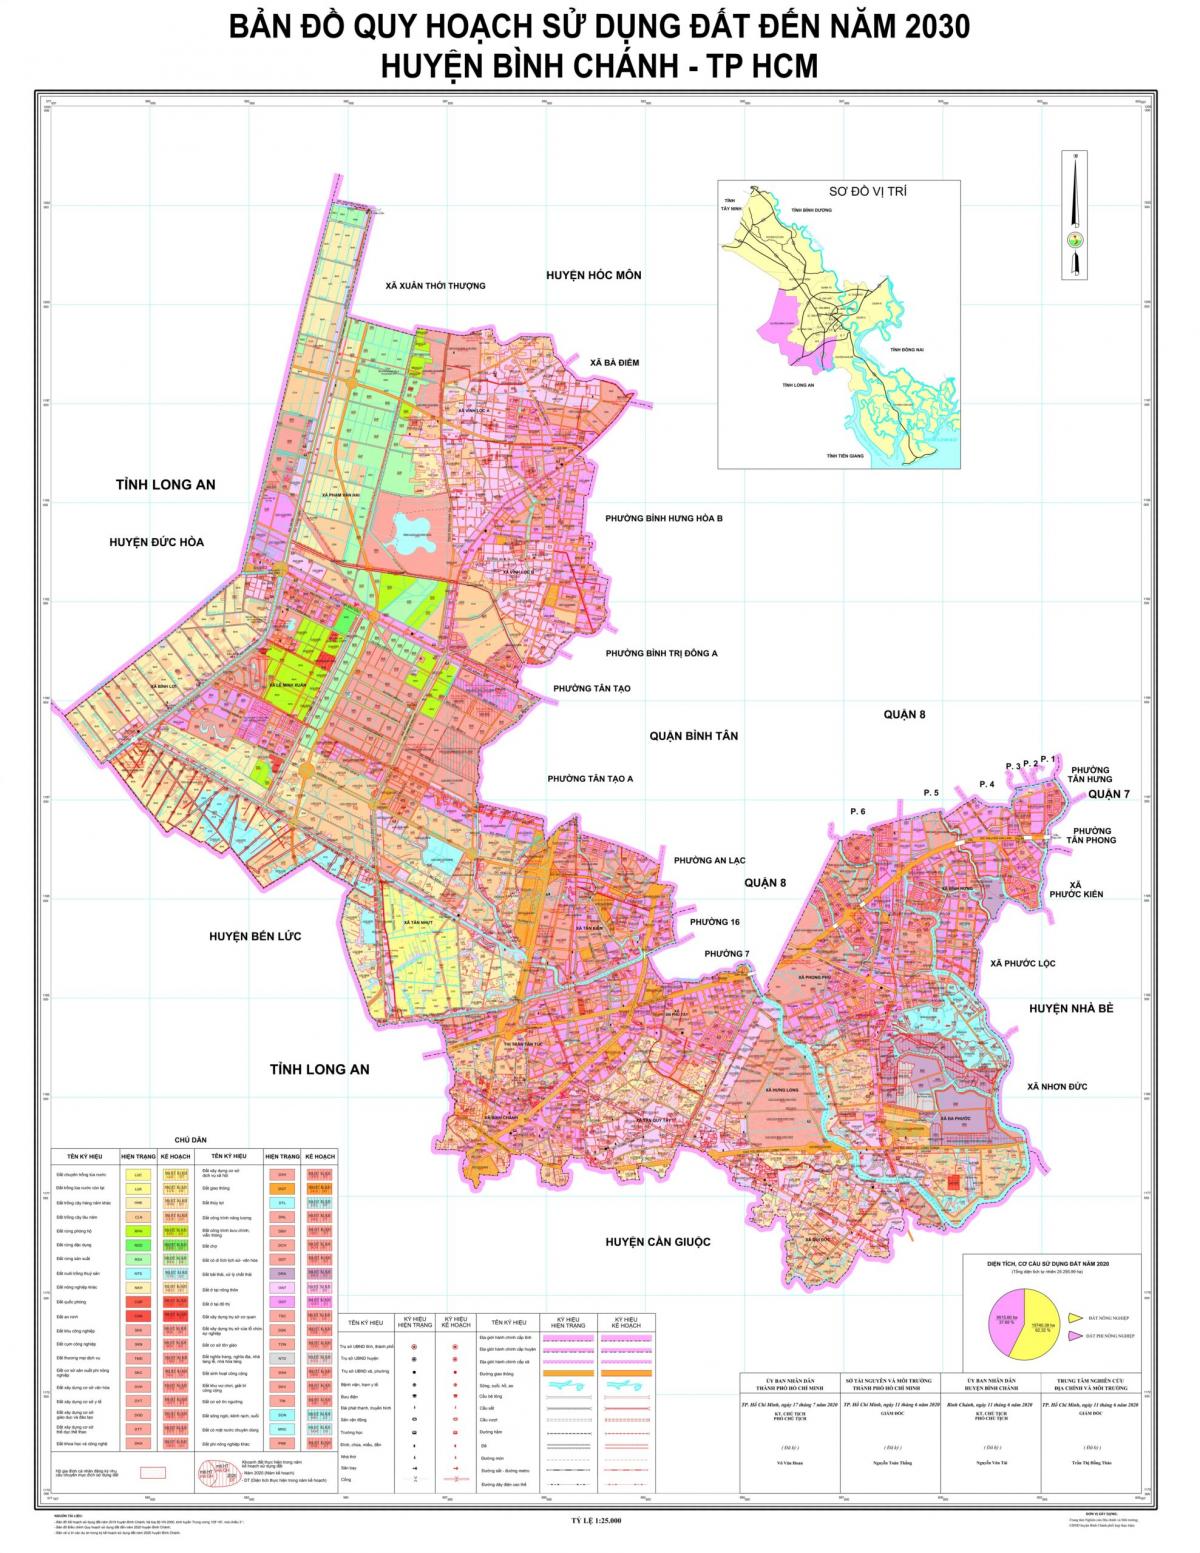 Bản đồ quy hoạch huyện Bình Chánh 2030